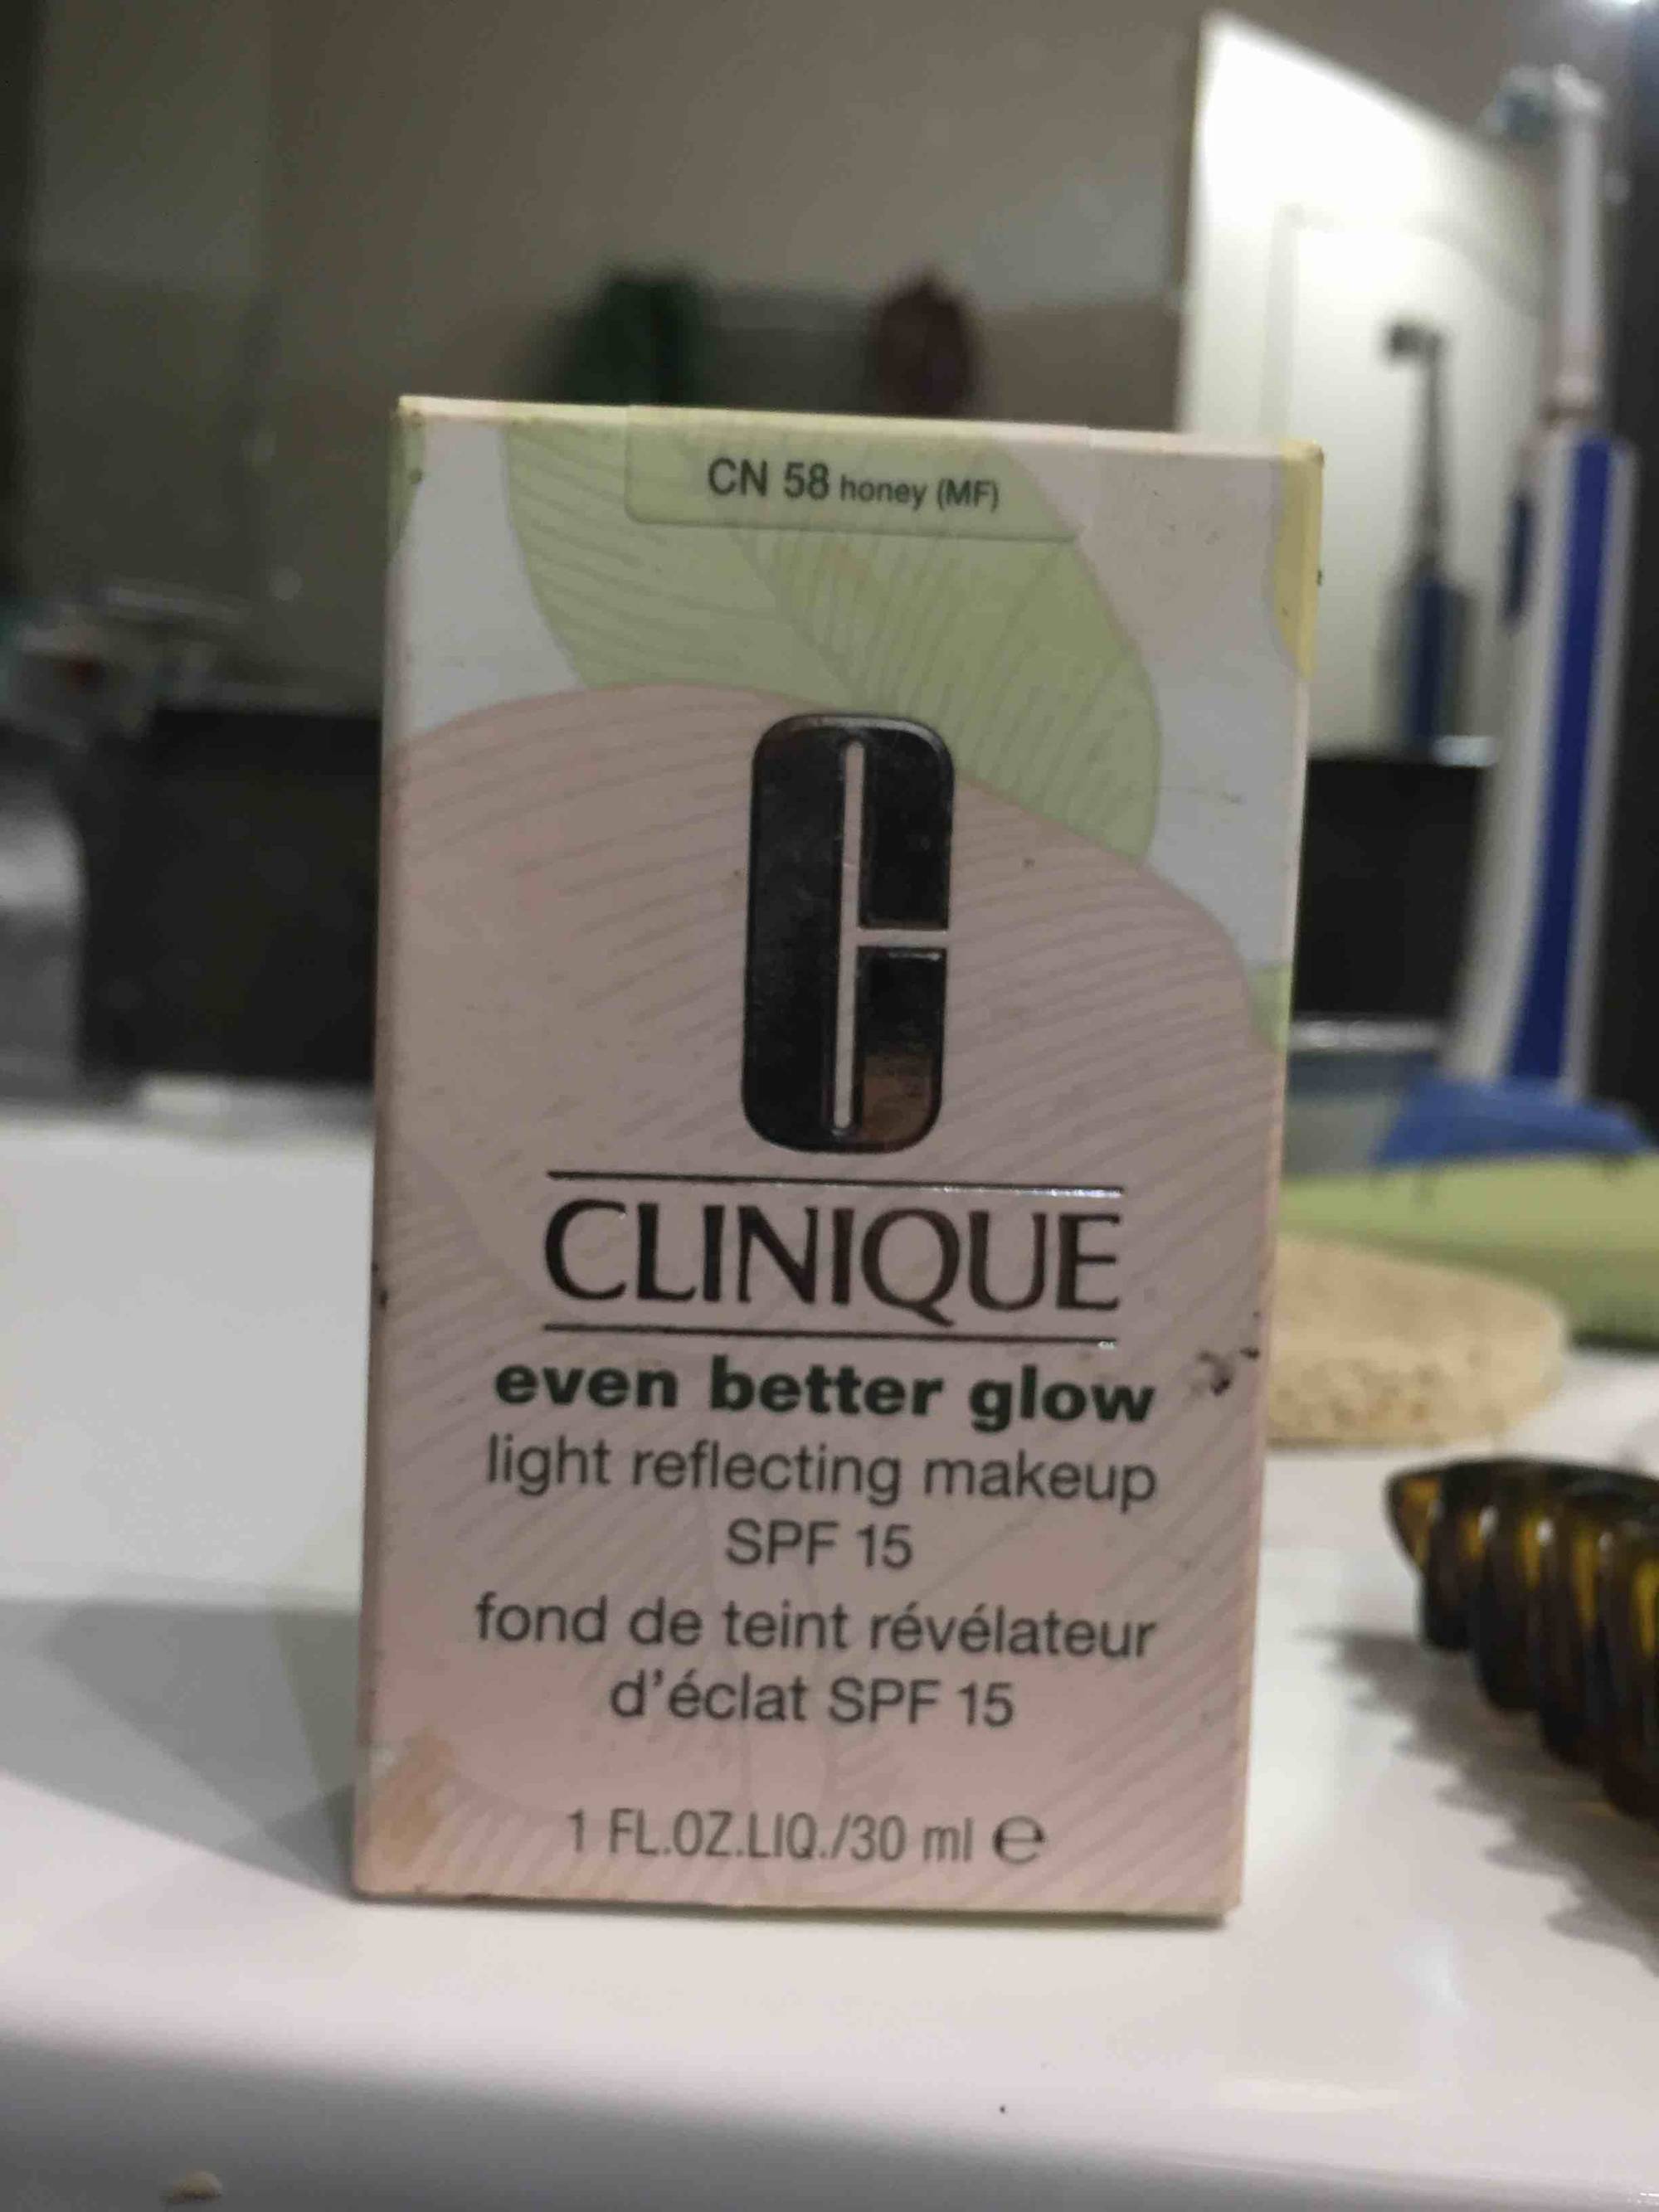 CLINIQUE - Even better glow - Fond de teint révélateur d'éclat SPF 15